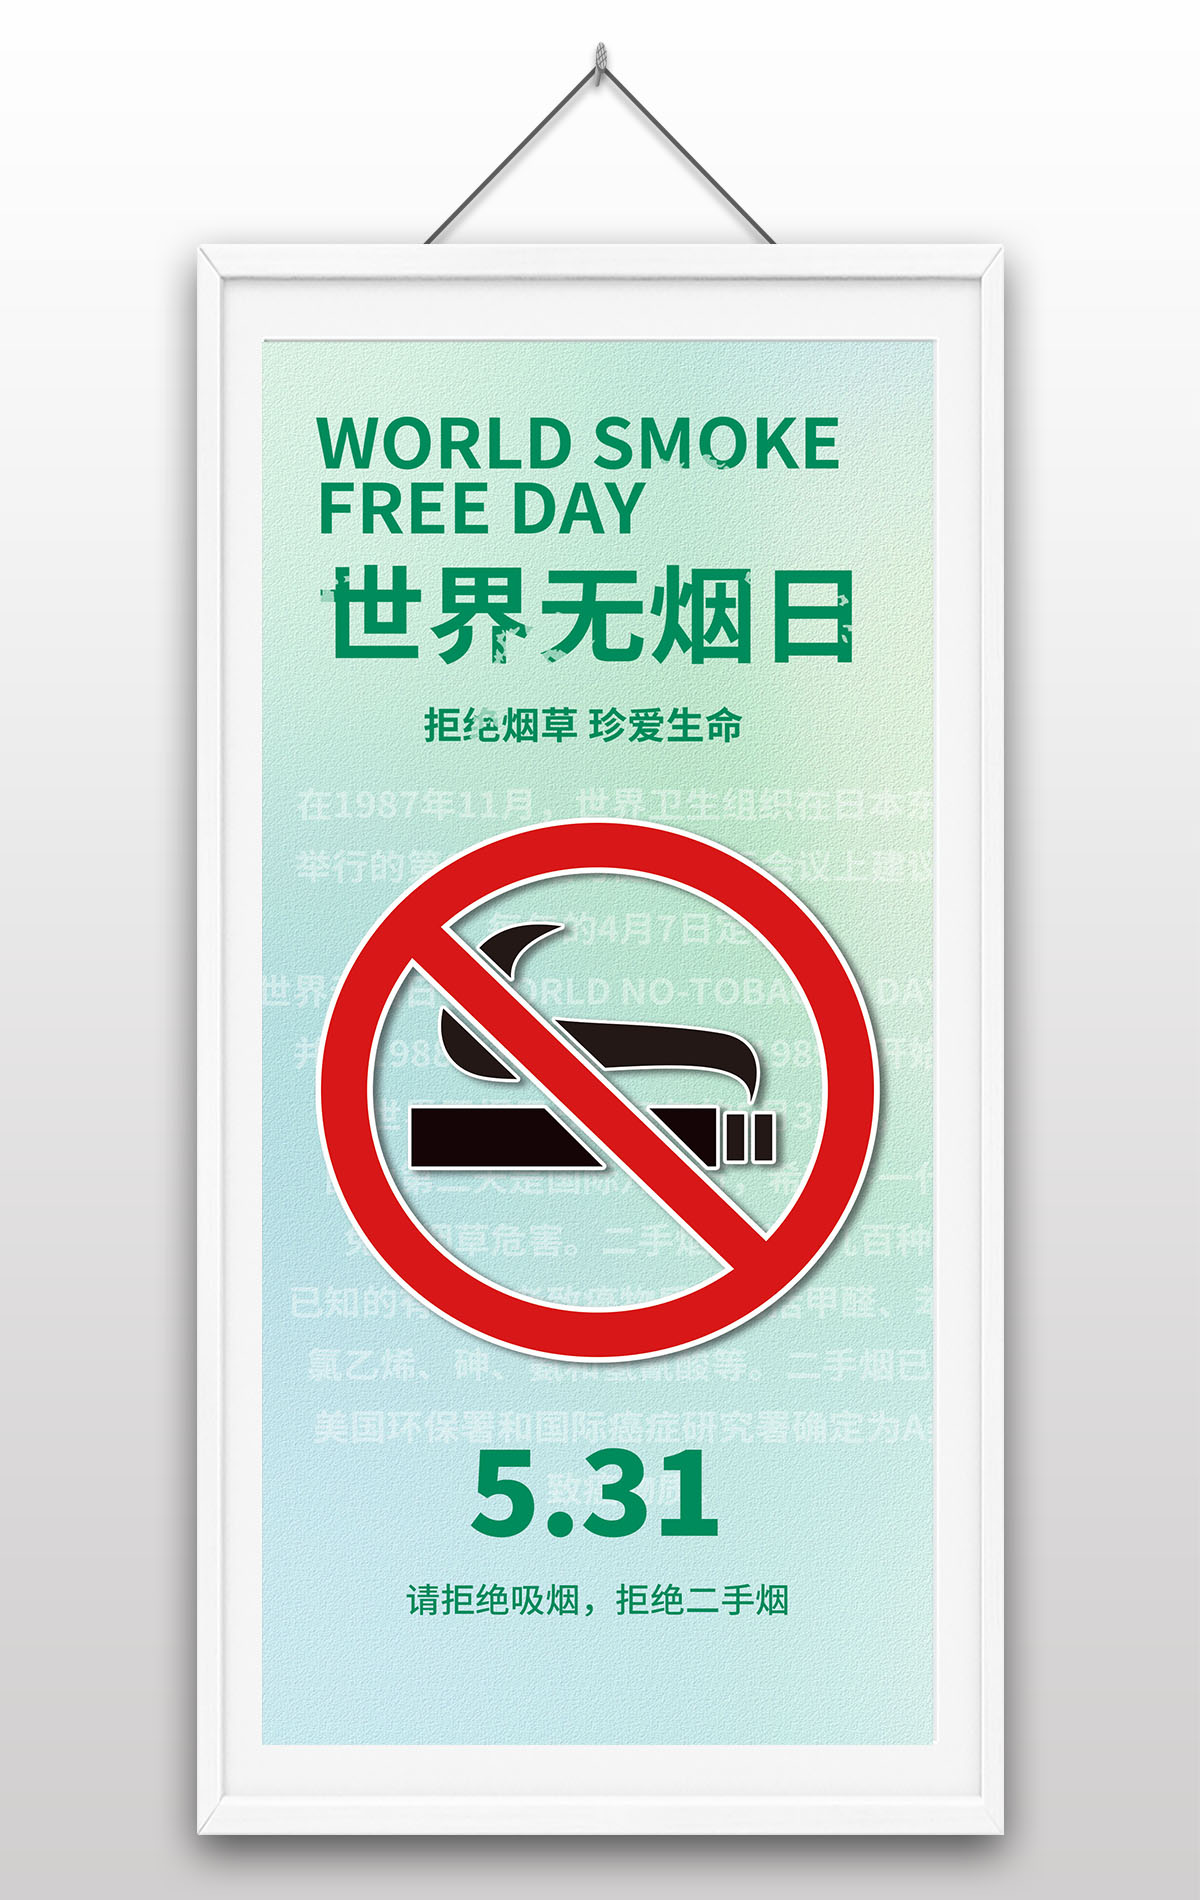 5月31日世界无烟日拒绝烟草珍爱生命活动主题宣传海报设计